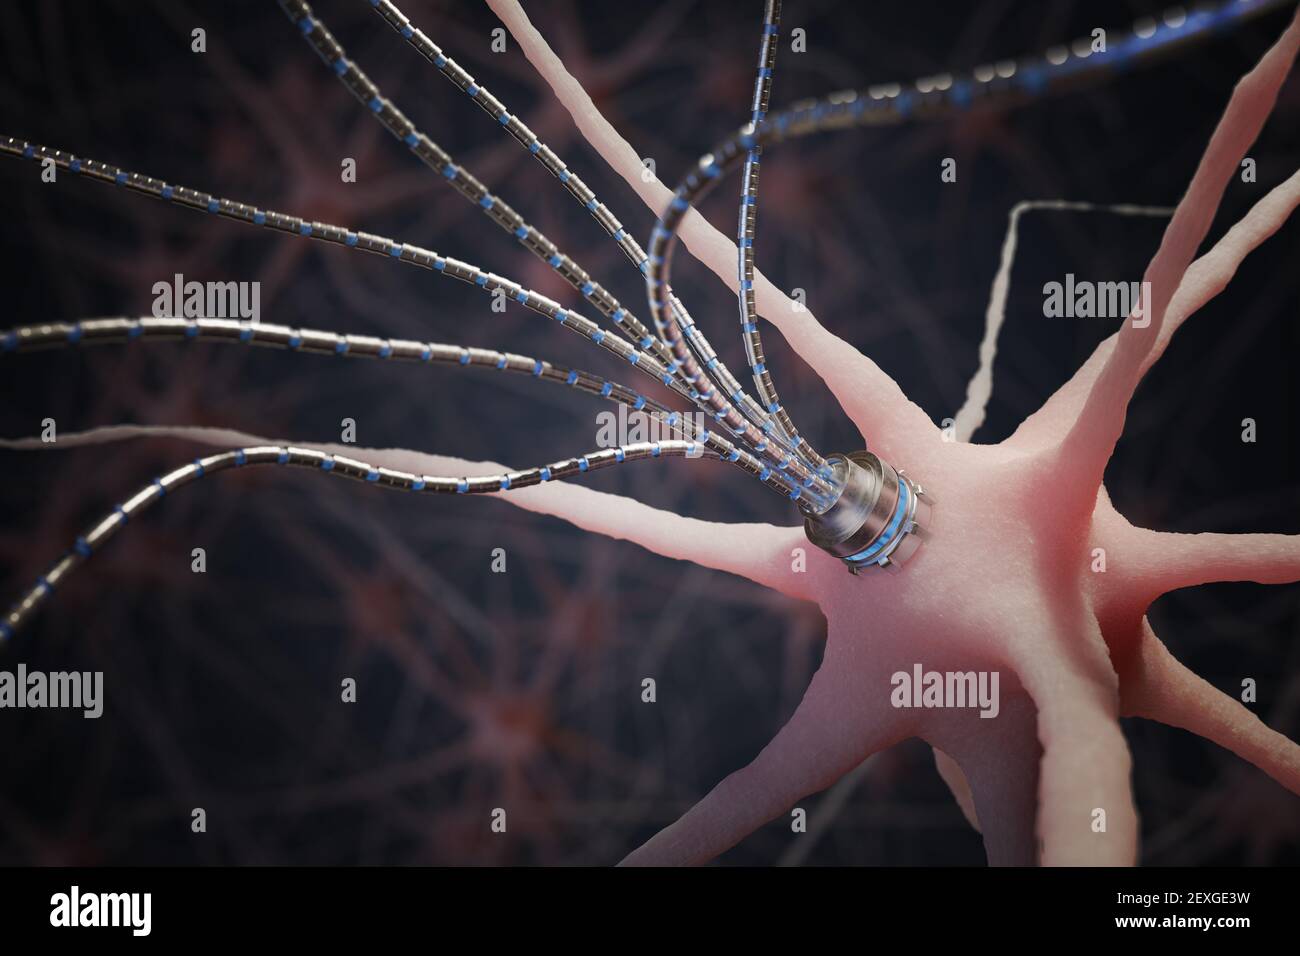 Concept de la nano technologie. Micro-axon artificiel robotique sur neurone dans le réseau neuronal. Illustration de rendu 3D. Banque D'Images